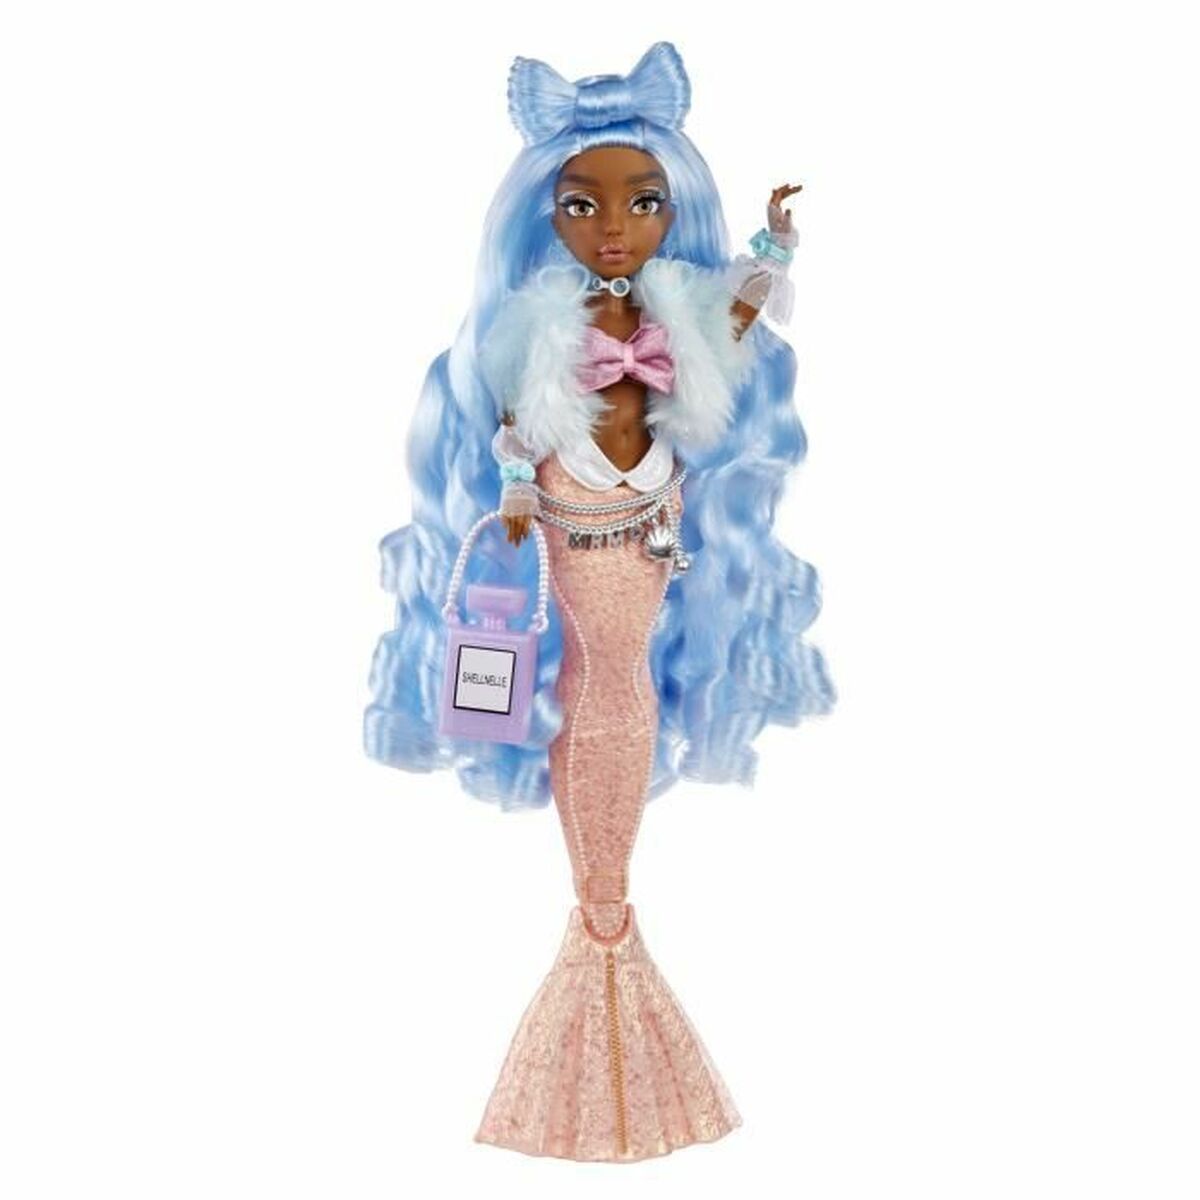 Bambola Mermaid 34 cm